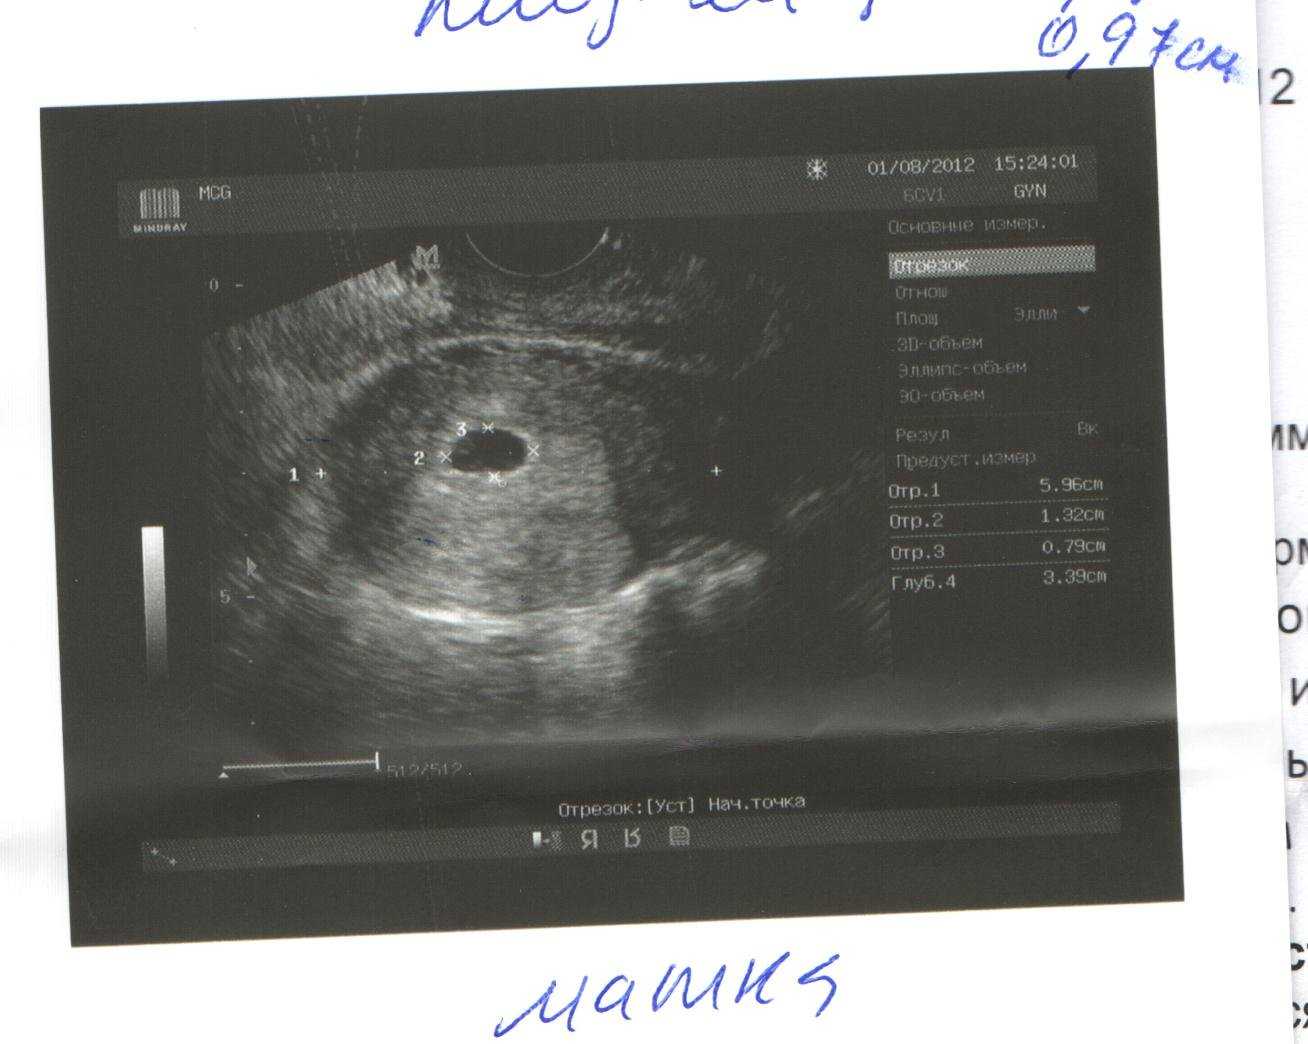 Акушерский срок 6 недель. Снимки УЗИ 4 недели беременности акушерская. Плодное яйцо на УЗИ 5 недель. УЗИ на 4-5 неделе беременности акушерской. УЗИ 5 акушерских недель 2 дня беременности двойня.